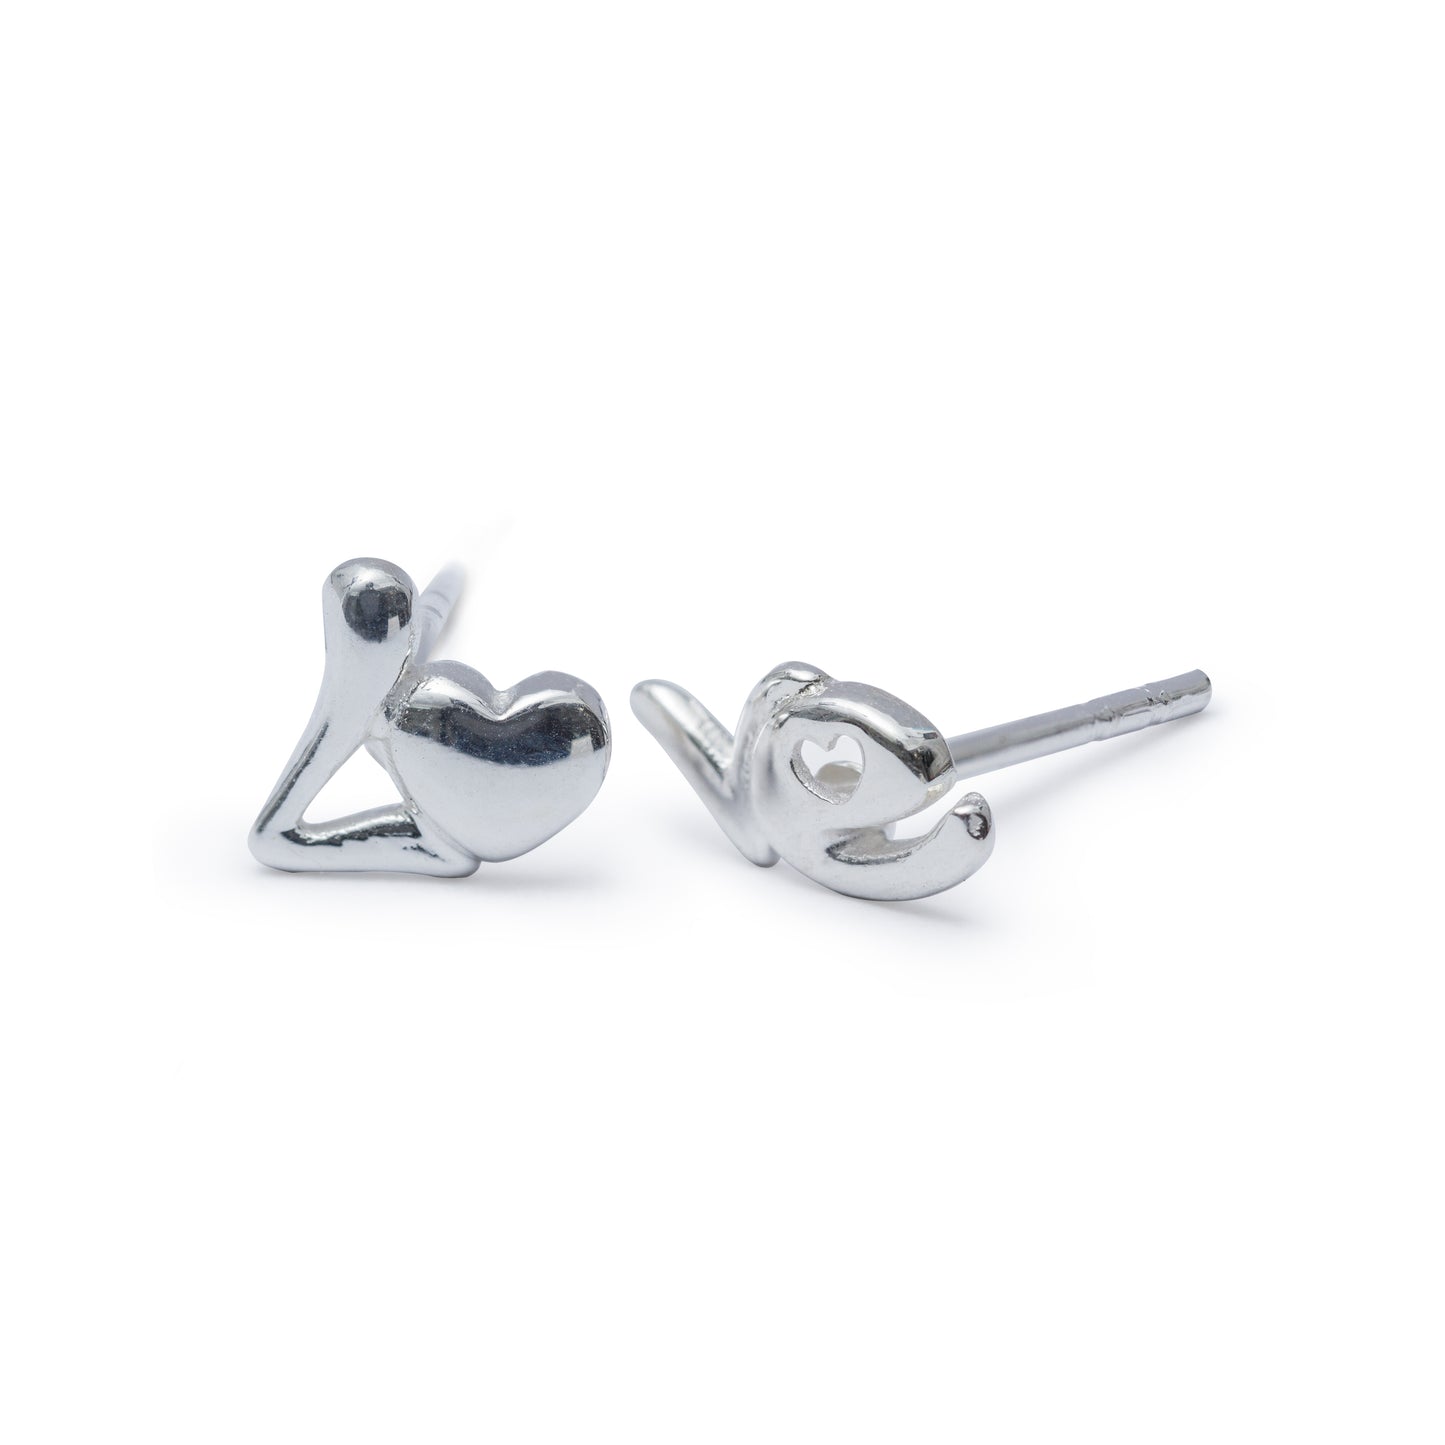 Sterling Silver Love Heart Stud Earrings